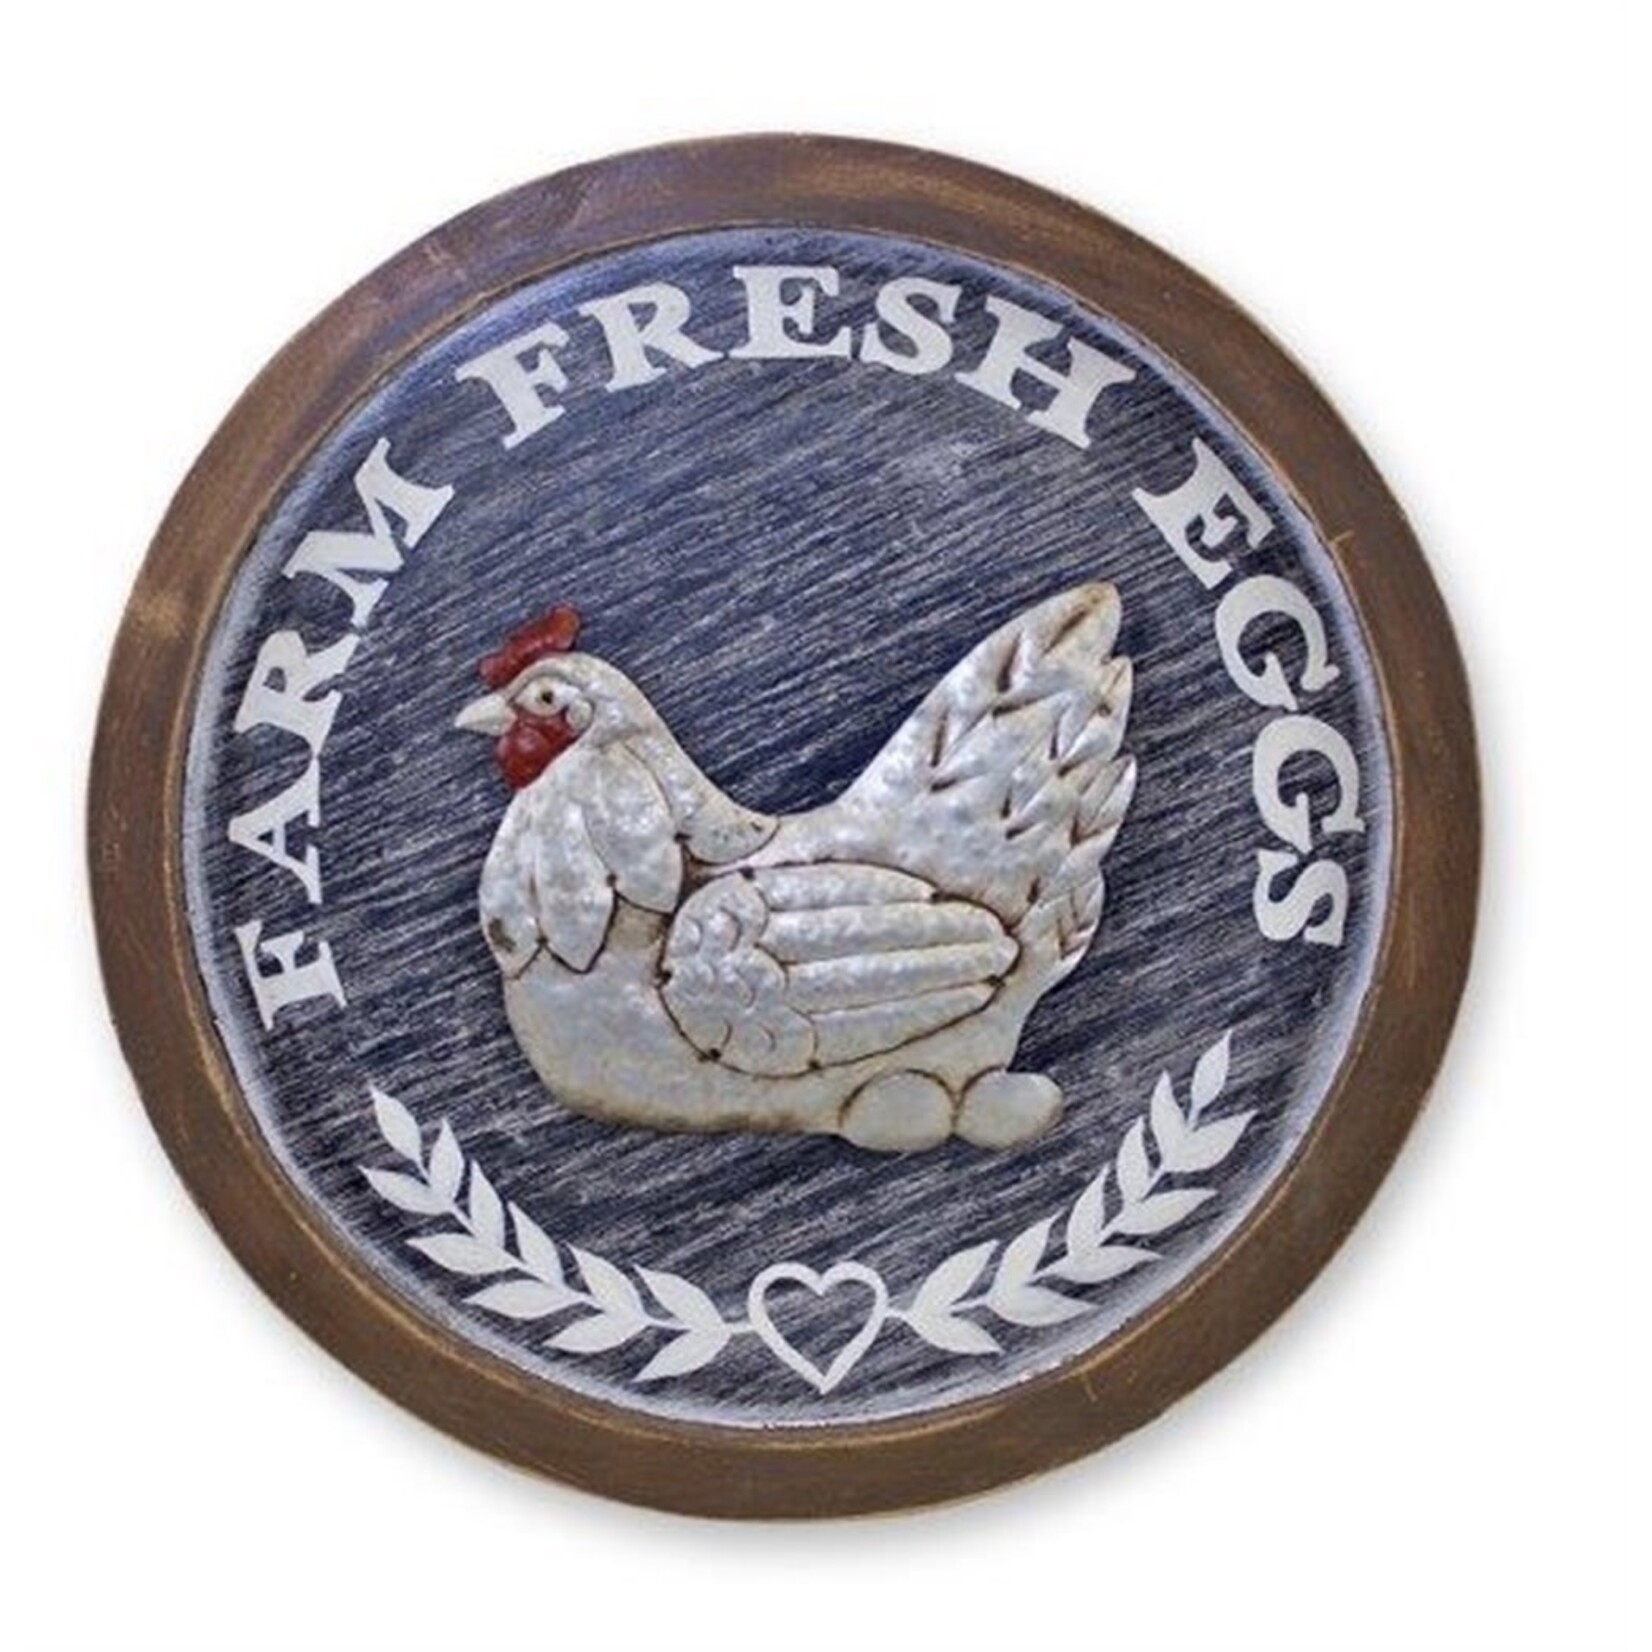 Melrose Round Chicken Plaque